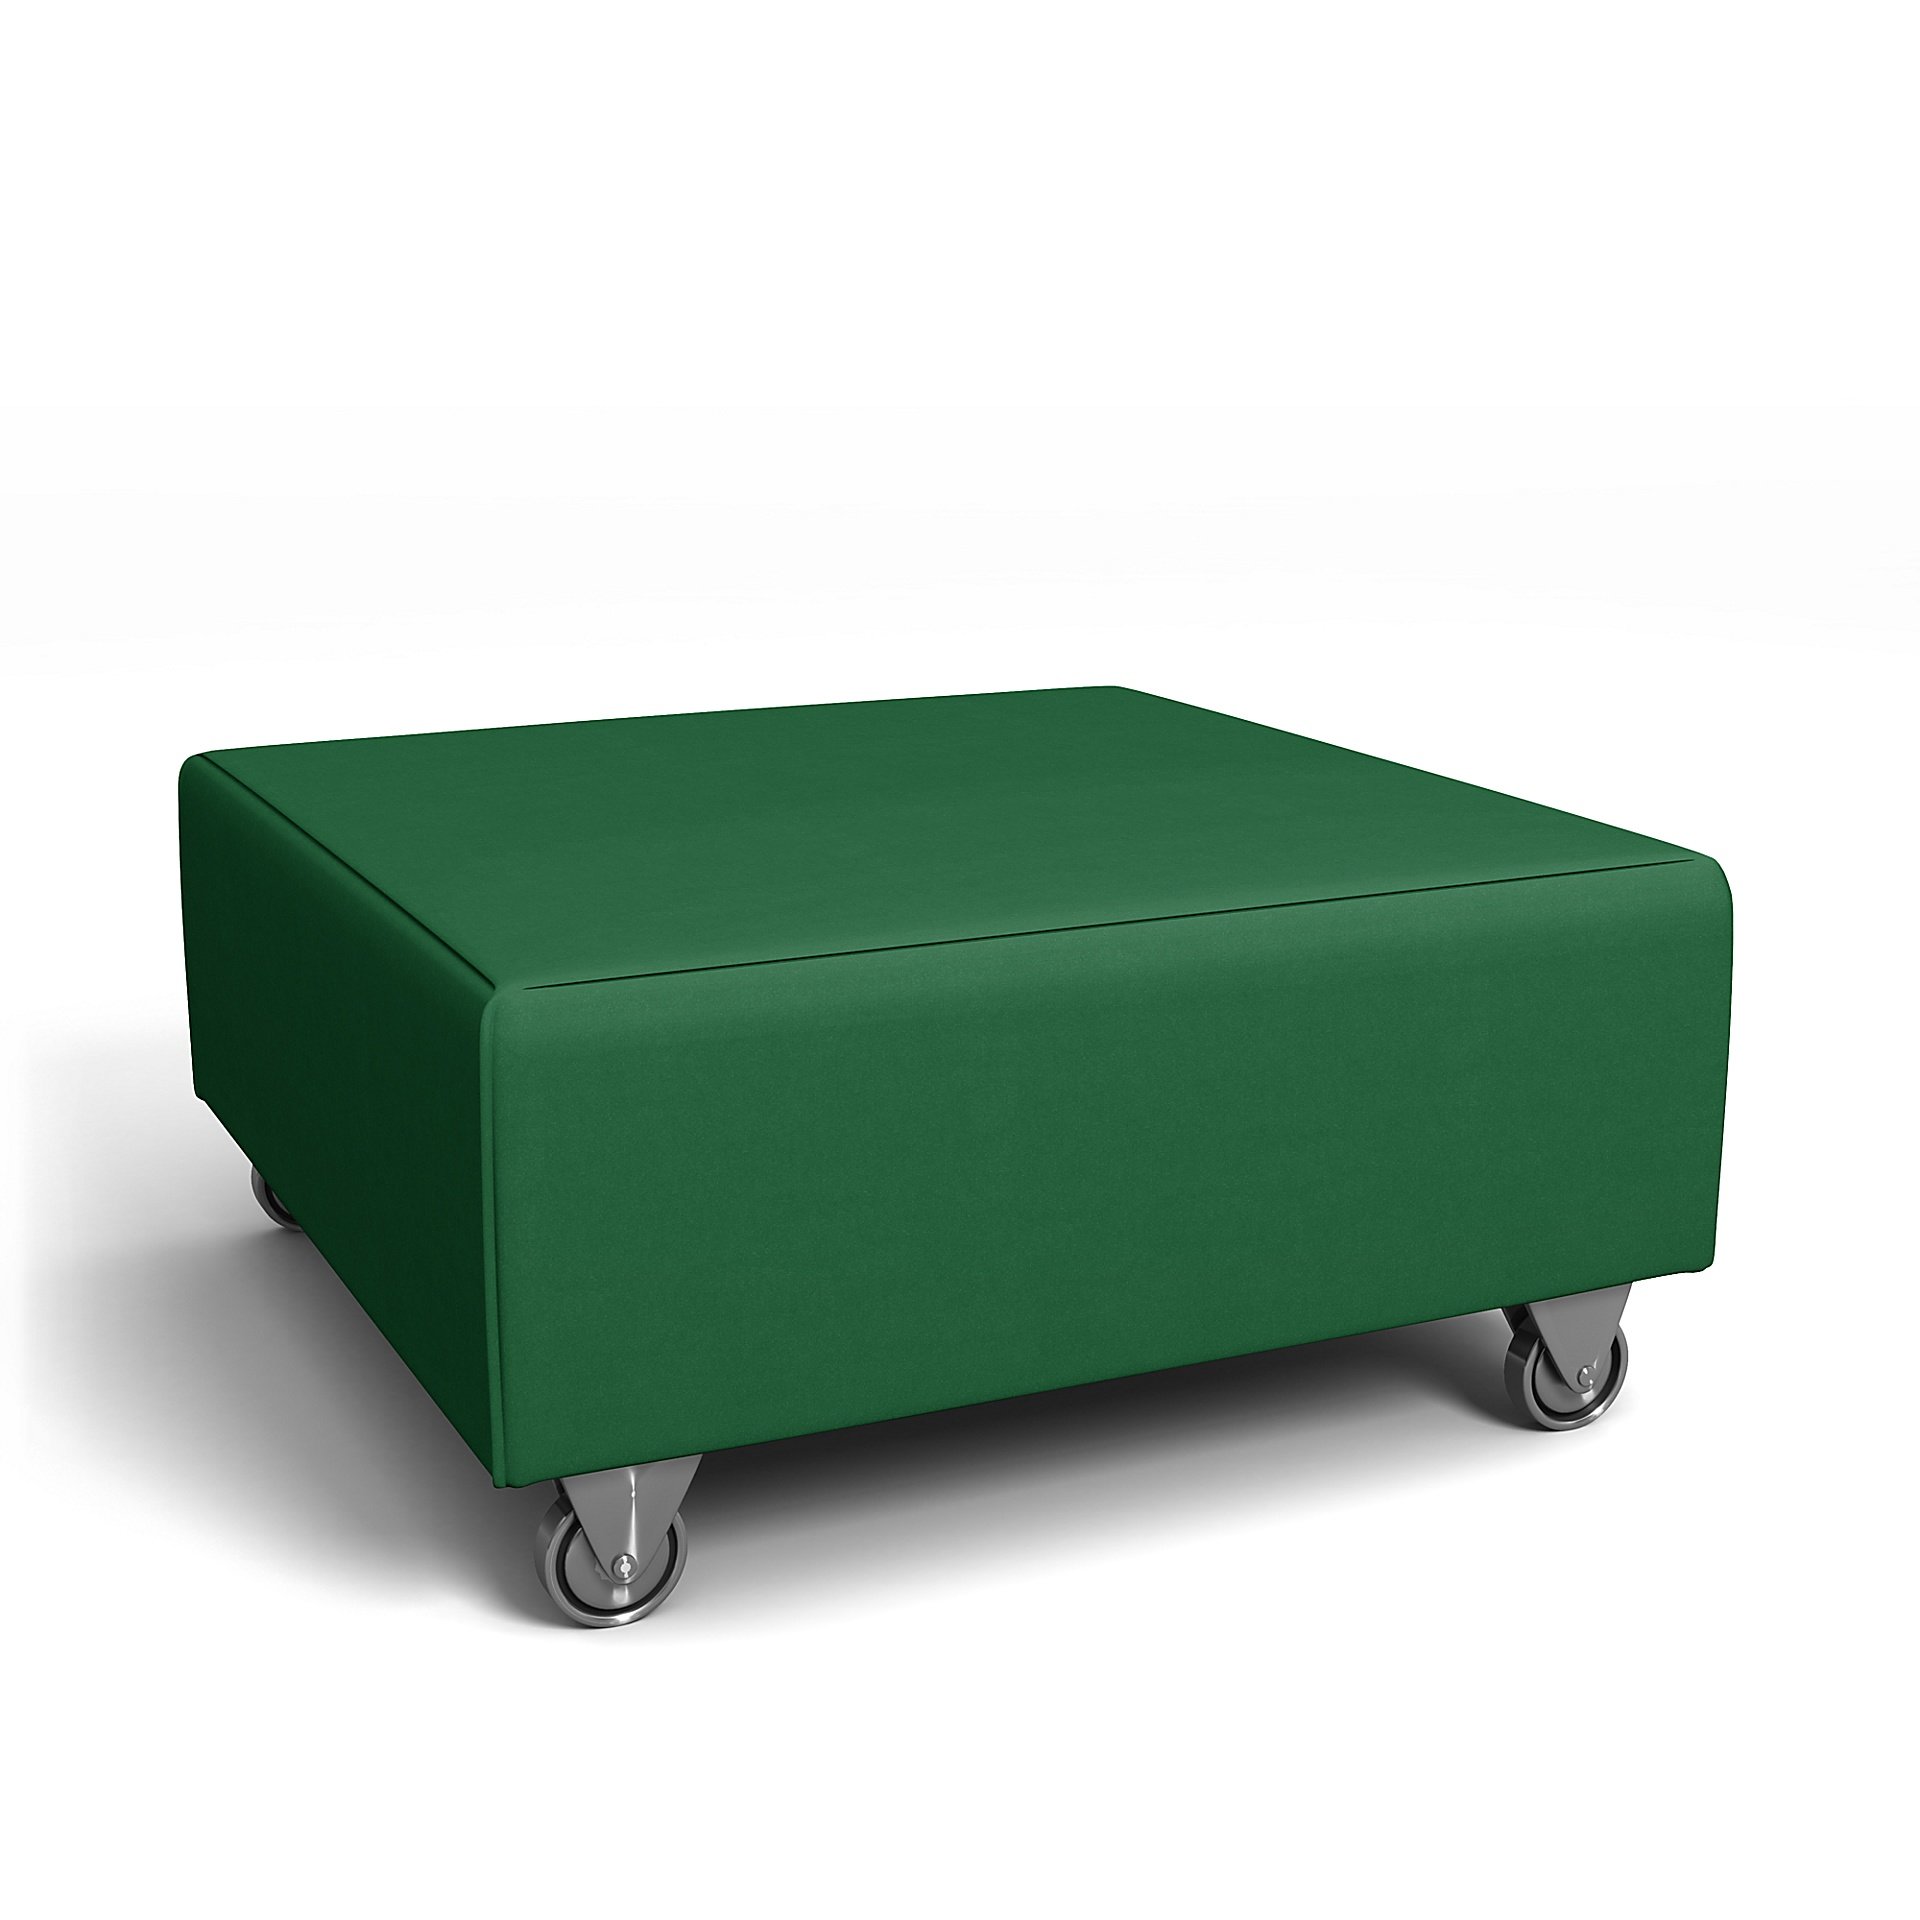 IKEA - Falsterbo Footstool Cover, Abundant Green, Velvet - Bemz